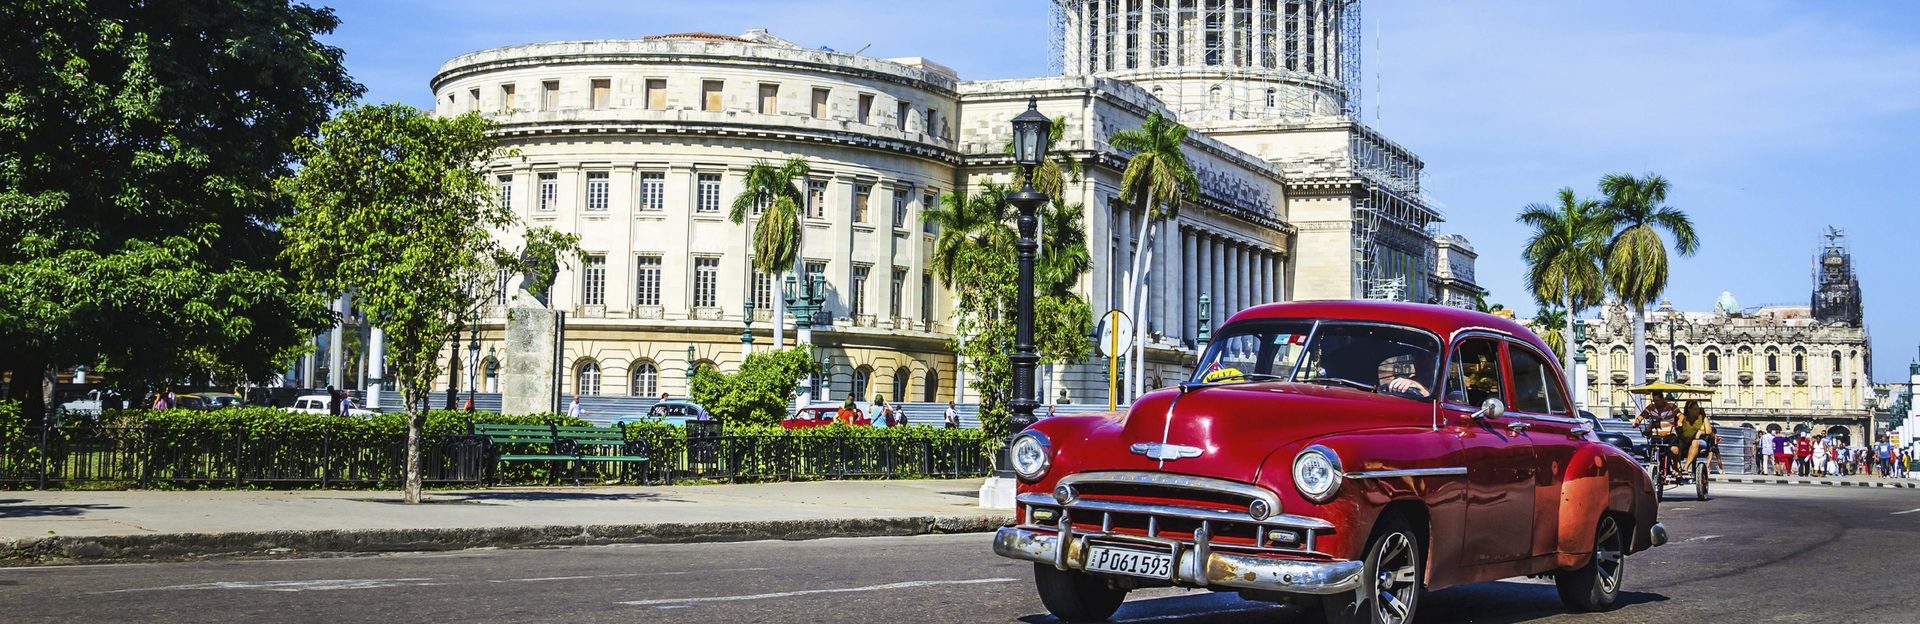 Kuba skokan roku v počtu návštěvníků